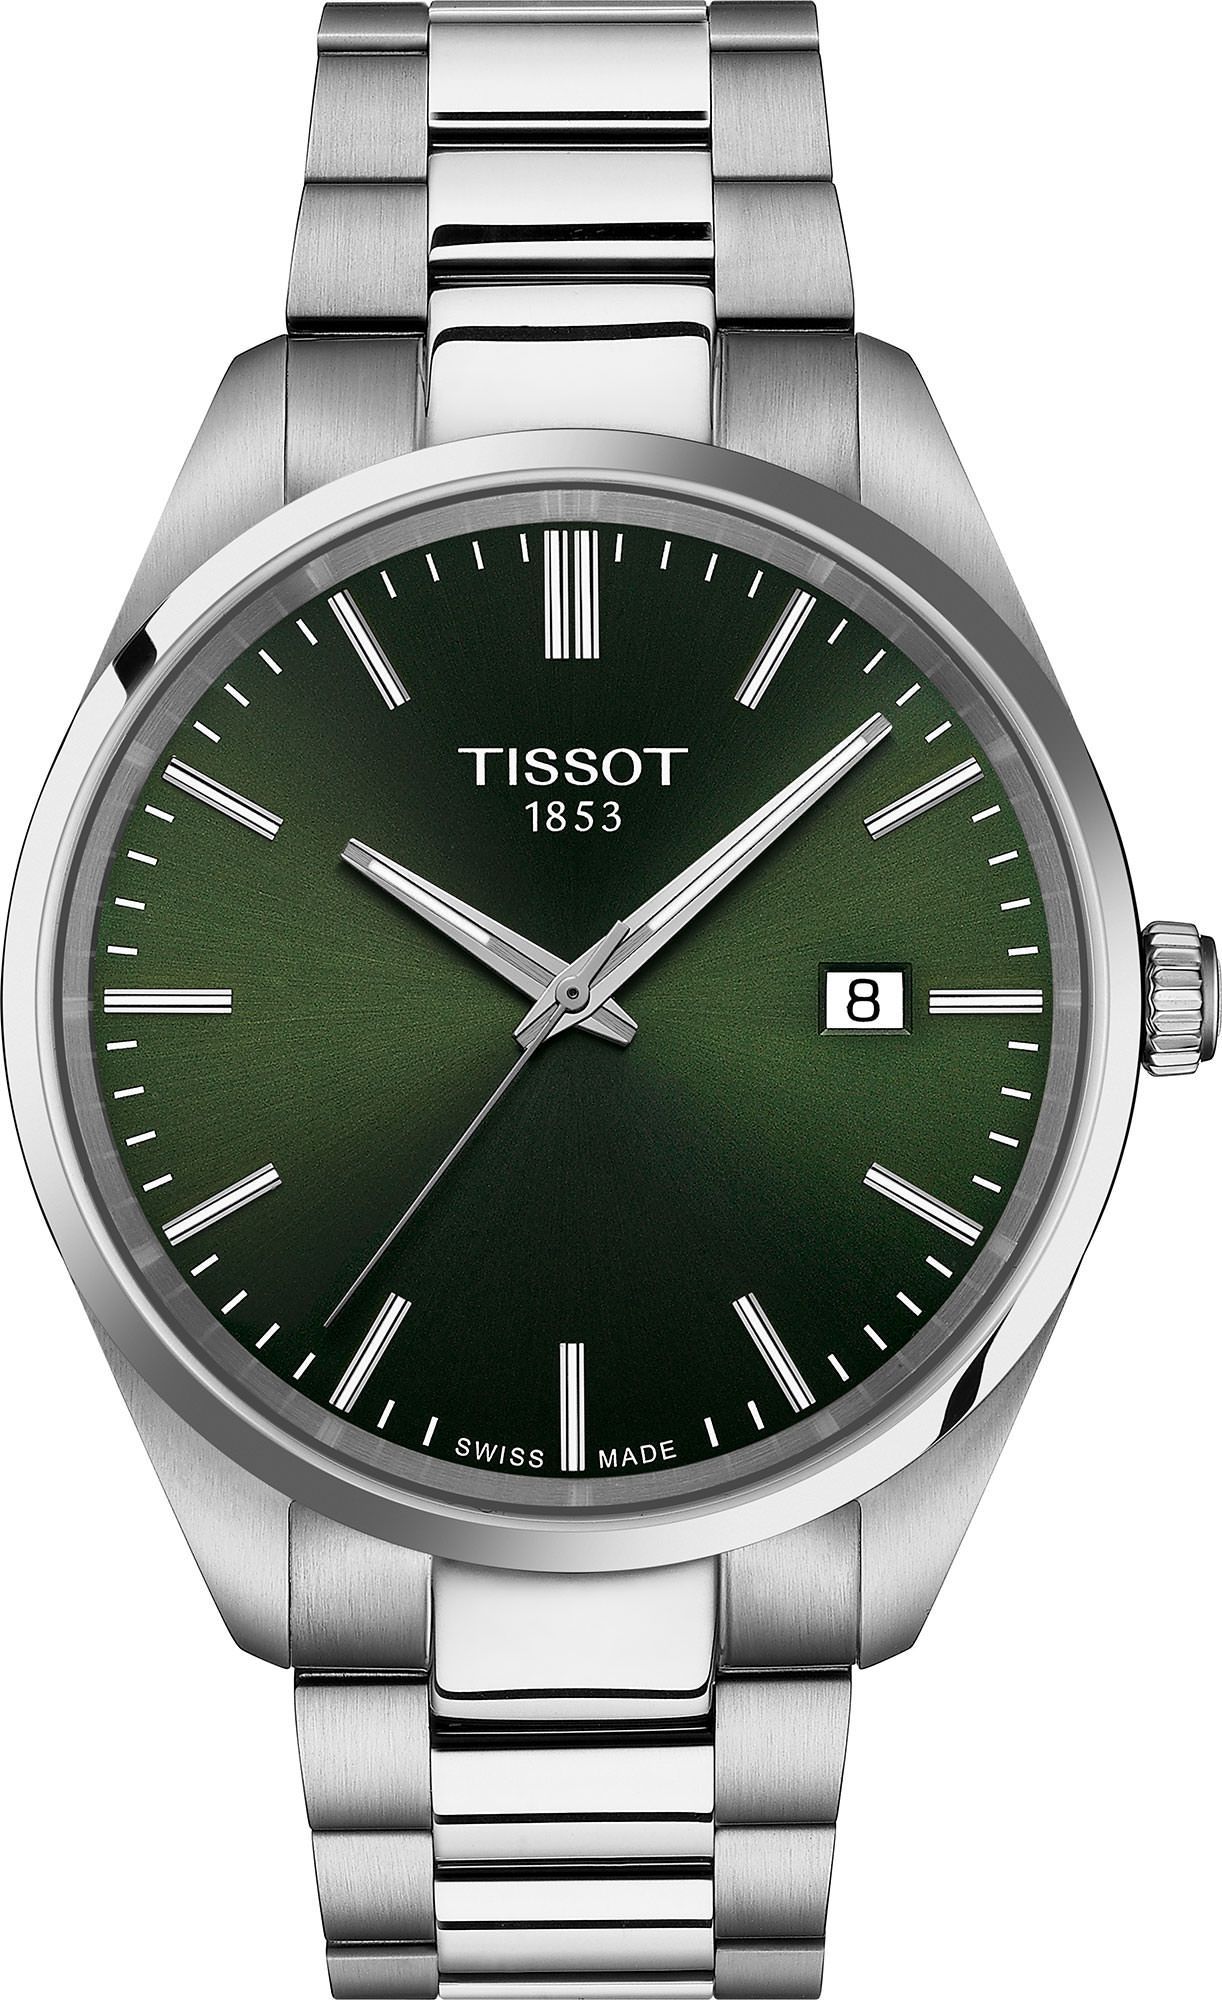 Tissot T-Classic Tissot PR 100 Green Dial 40 mm Quartz Watch For Men - 1